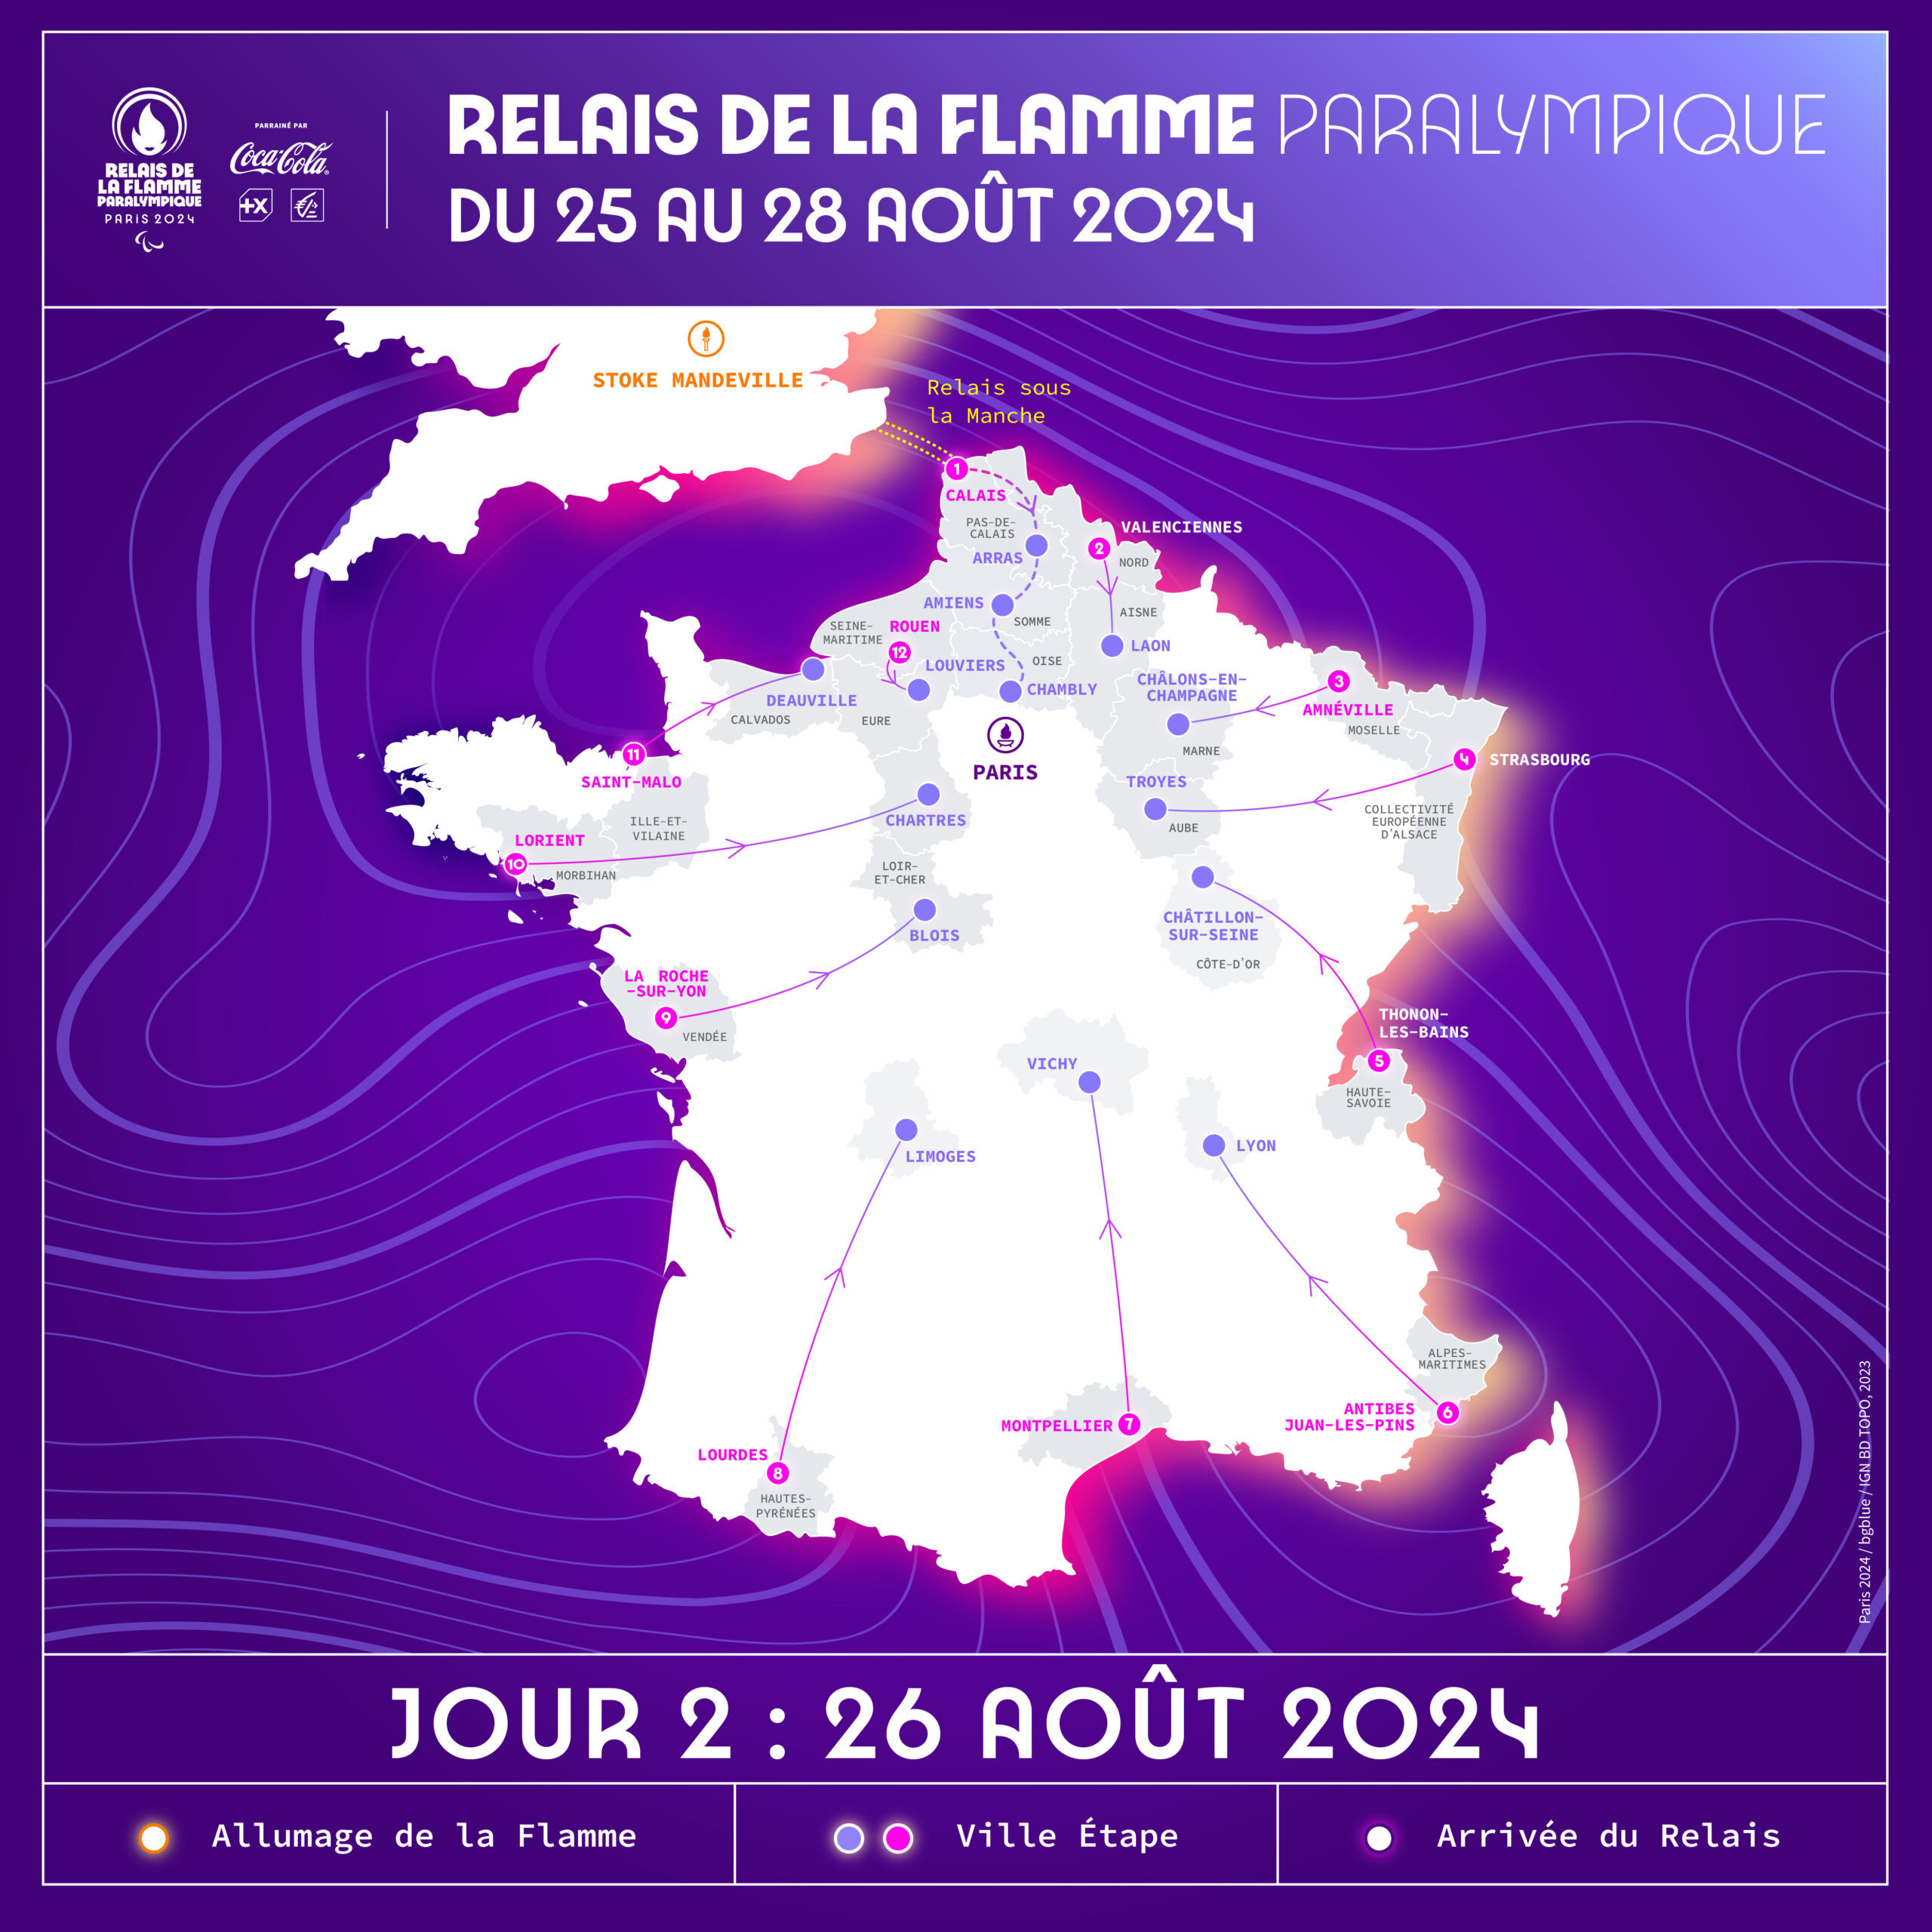 Pin's Officiel Paris 2024 - Flamme Olympique